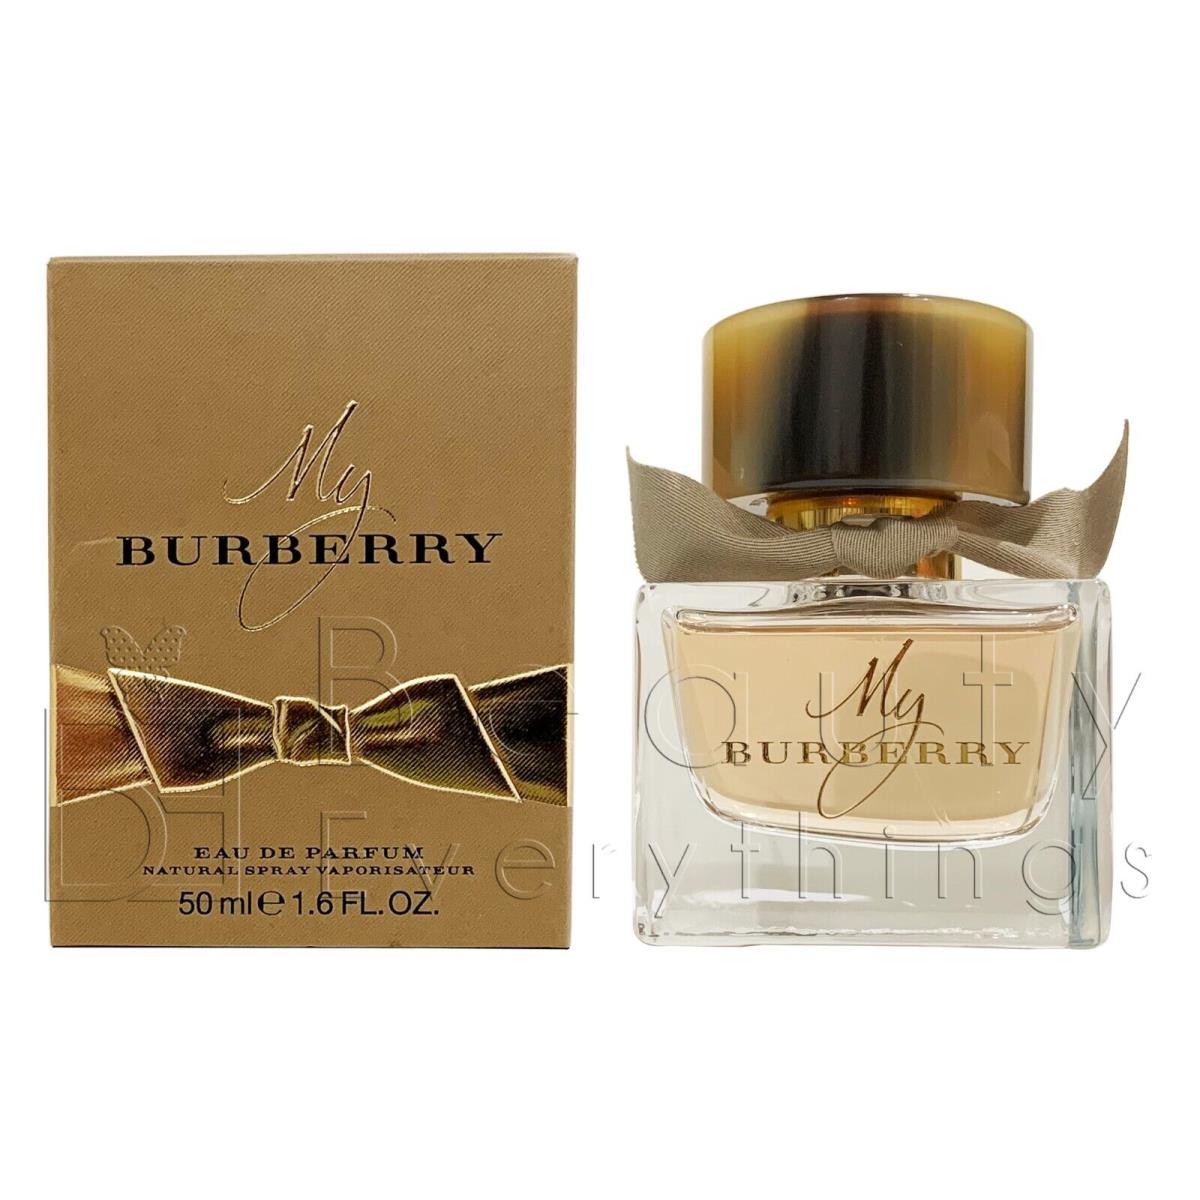 My Burberry by Burberry 1.6oz / 50ml Eau De Parfum Spray Wron Out Box For Women